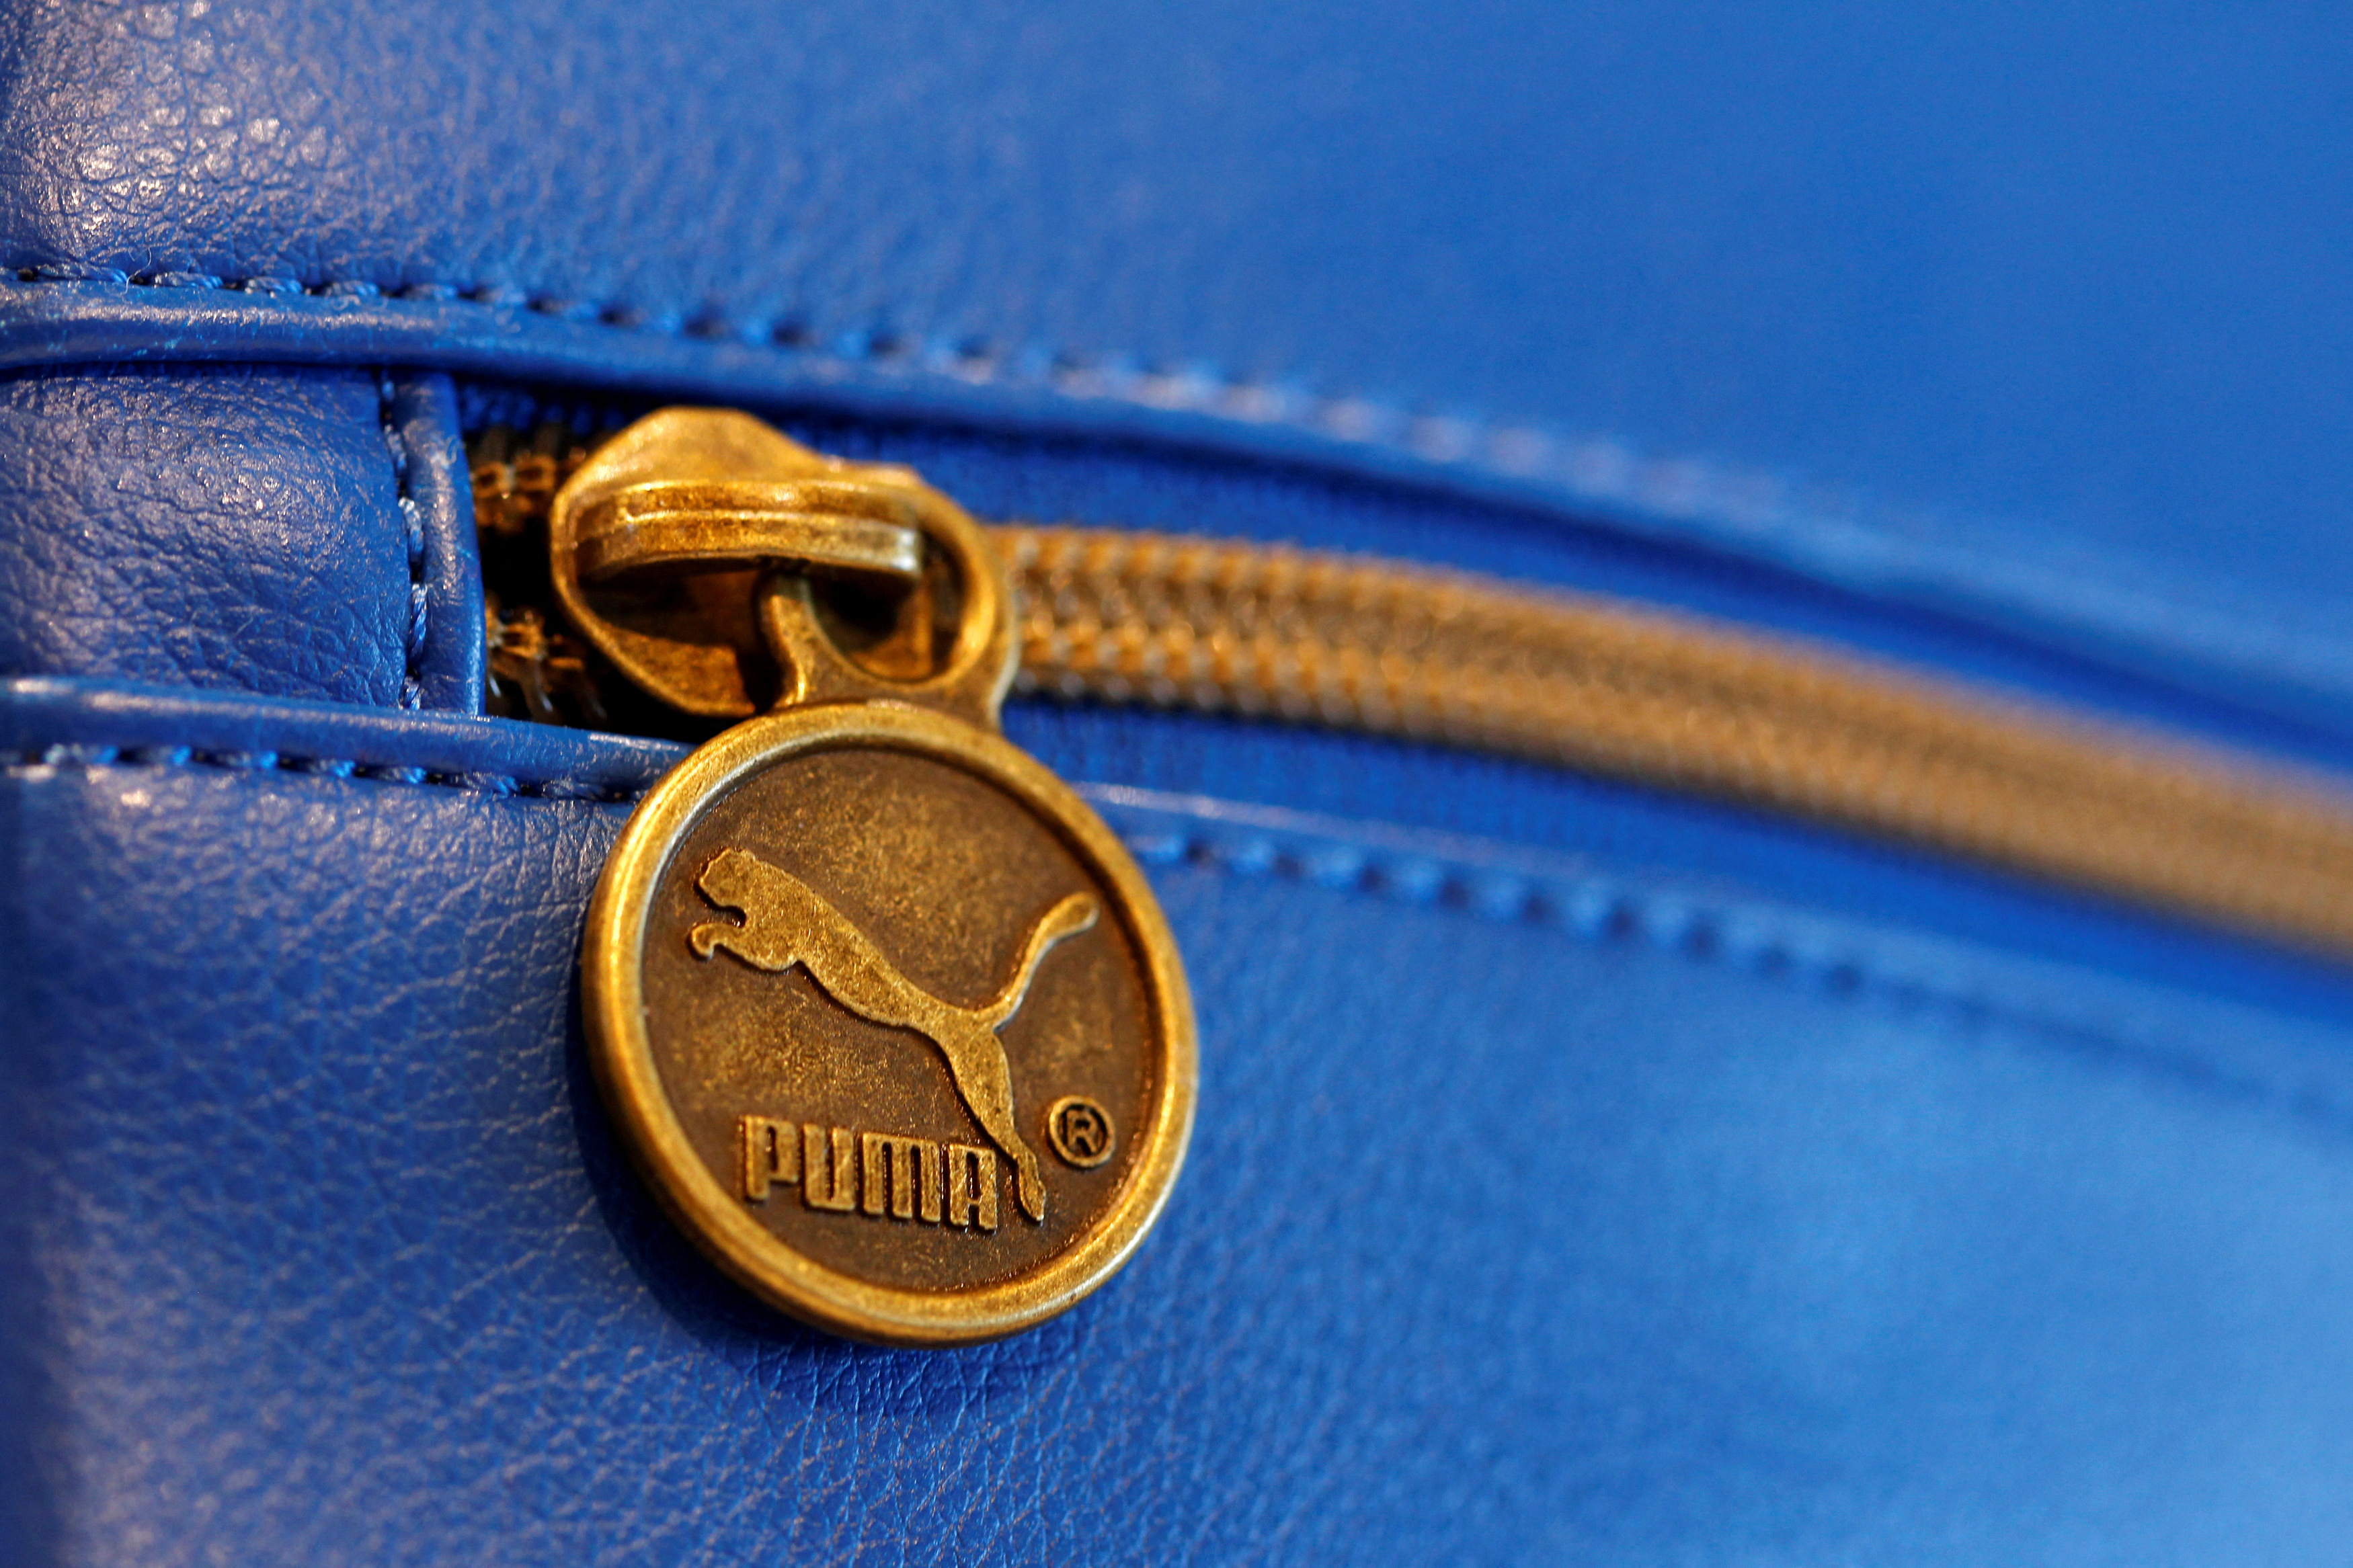 A Puma handbag 